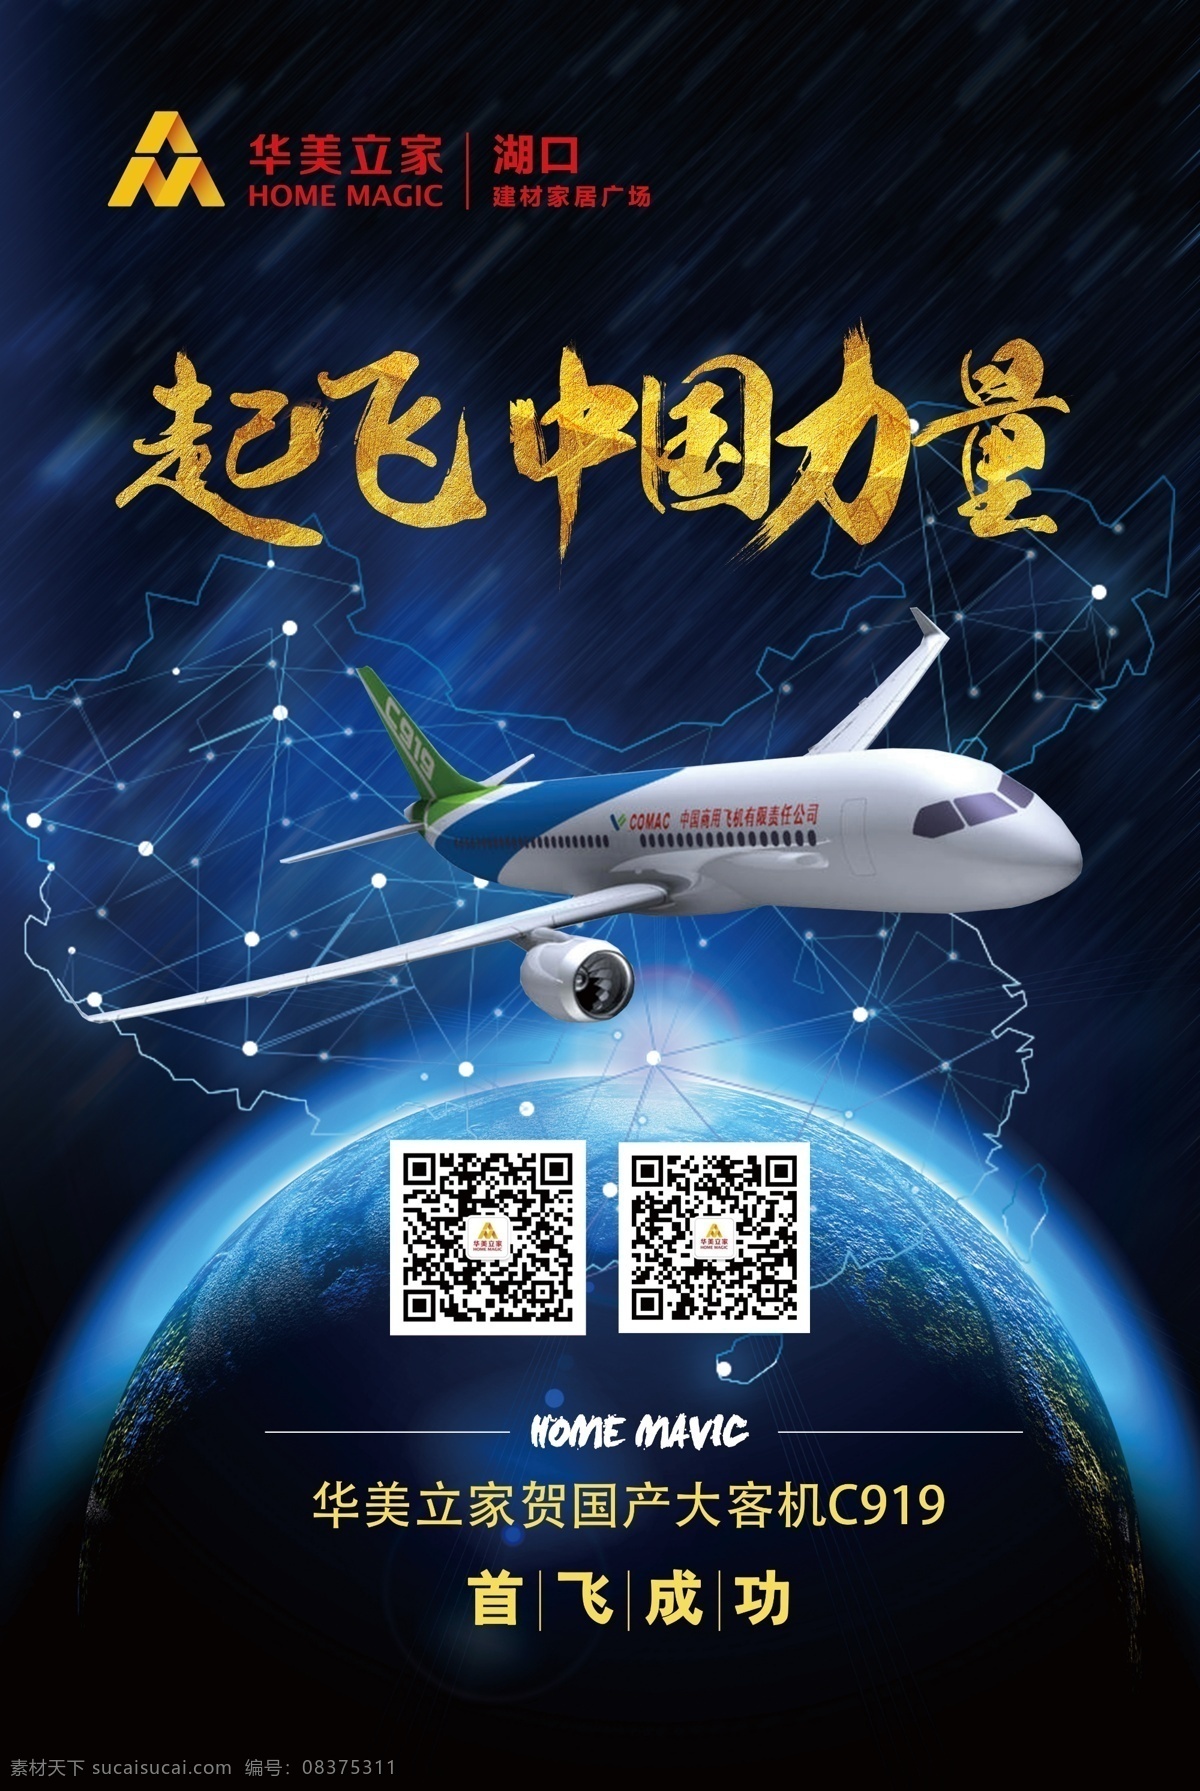 起飞中国力量 中国力量 飞机 励志 科技 蓝色 地球 卡通头像